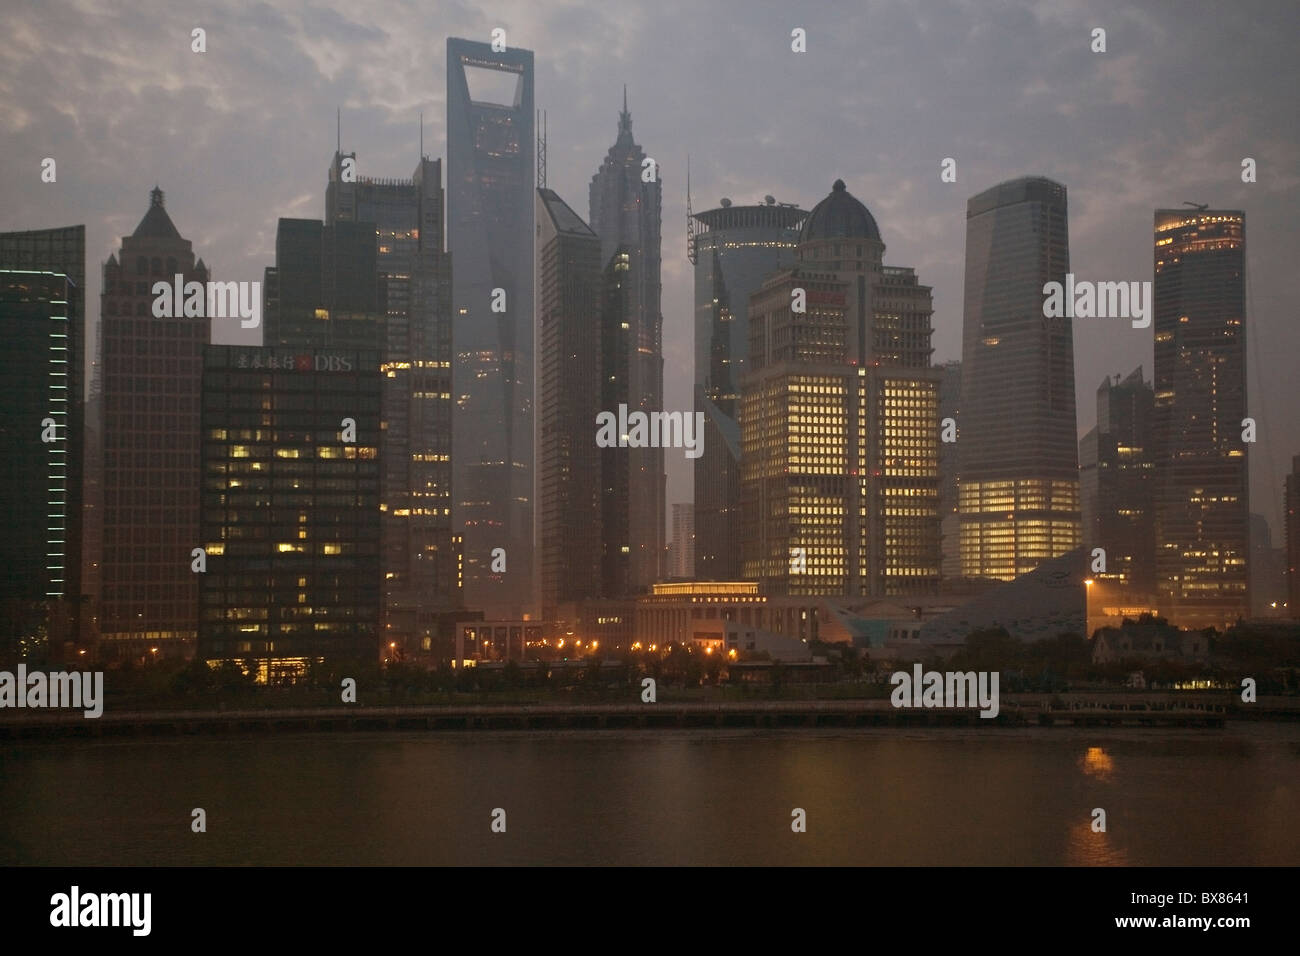 China Shanghai Pudong at dusk Stock Photo